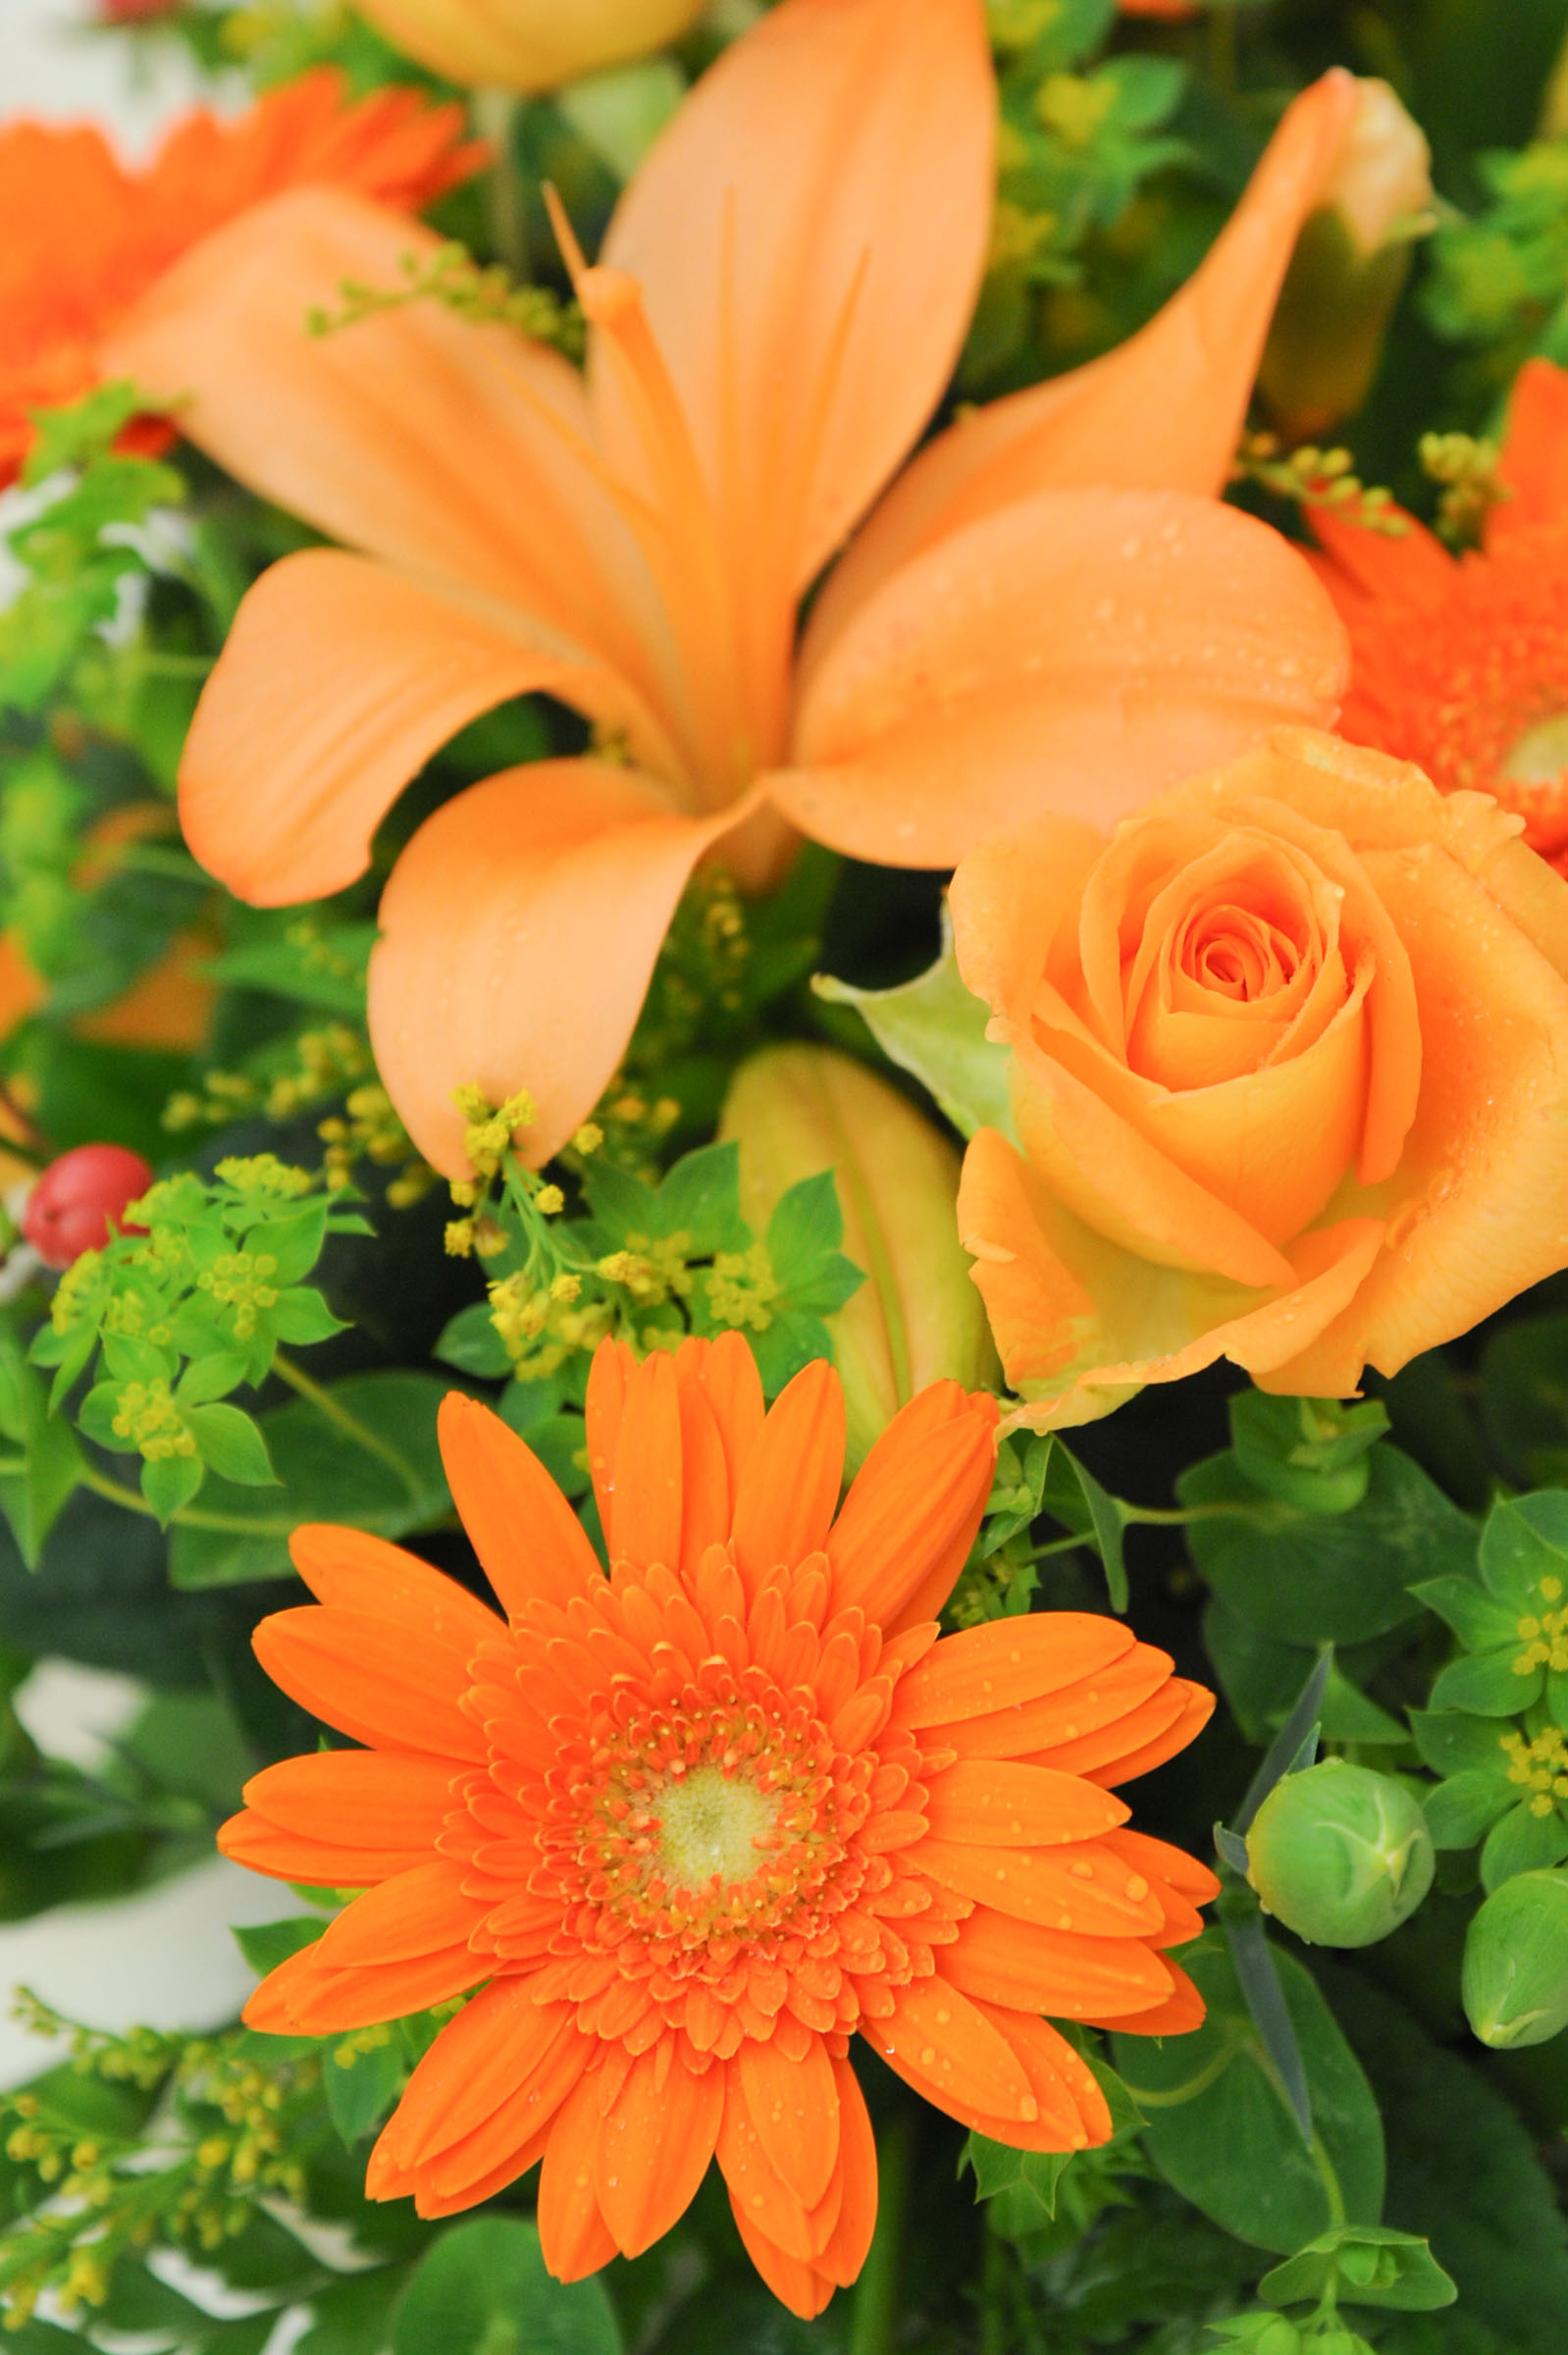 ユリとバラと菊 すべてオレンジ色の花で統一 Hana 花畑photo フリー 無料 の写真素材 壁紙置き場 オレンジ色の花